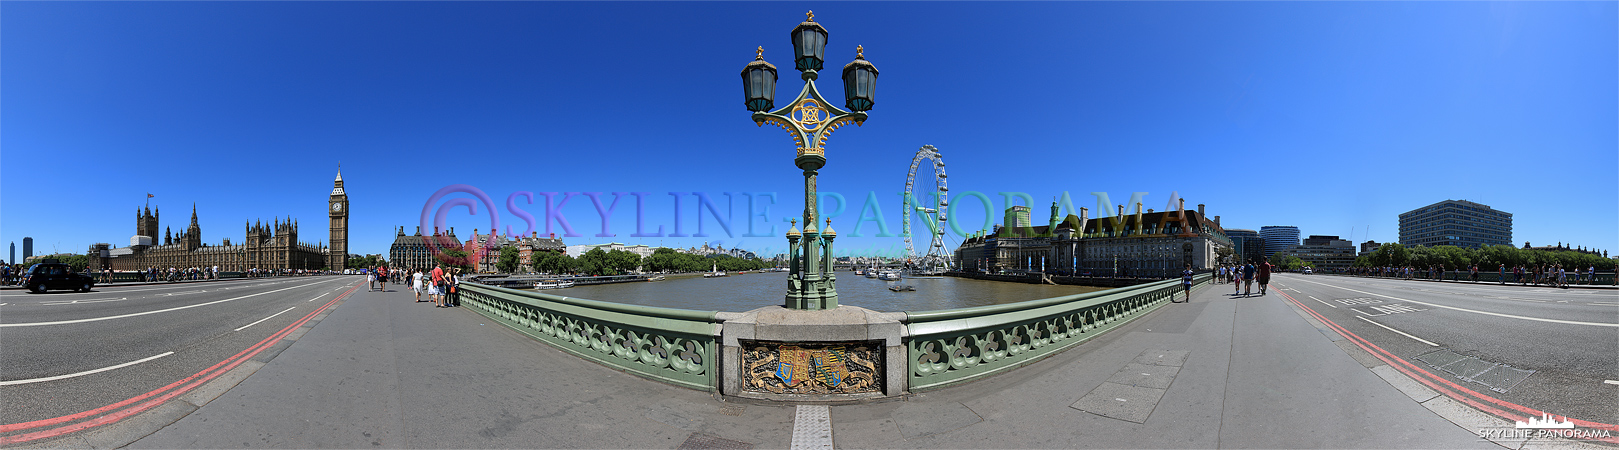 Bilder aus London - Das Panorama von der Westminster Bridge in London mit dem Westminster Palace, Big Ben und dem bekannten Riesenrad London Eye.